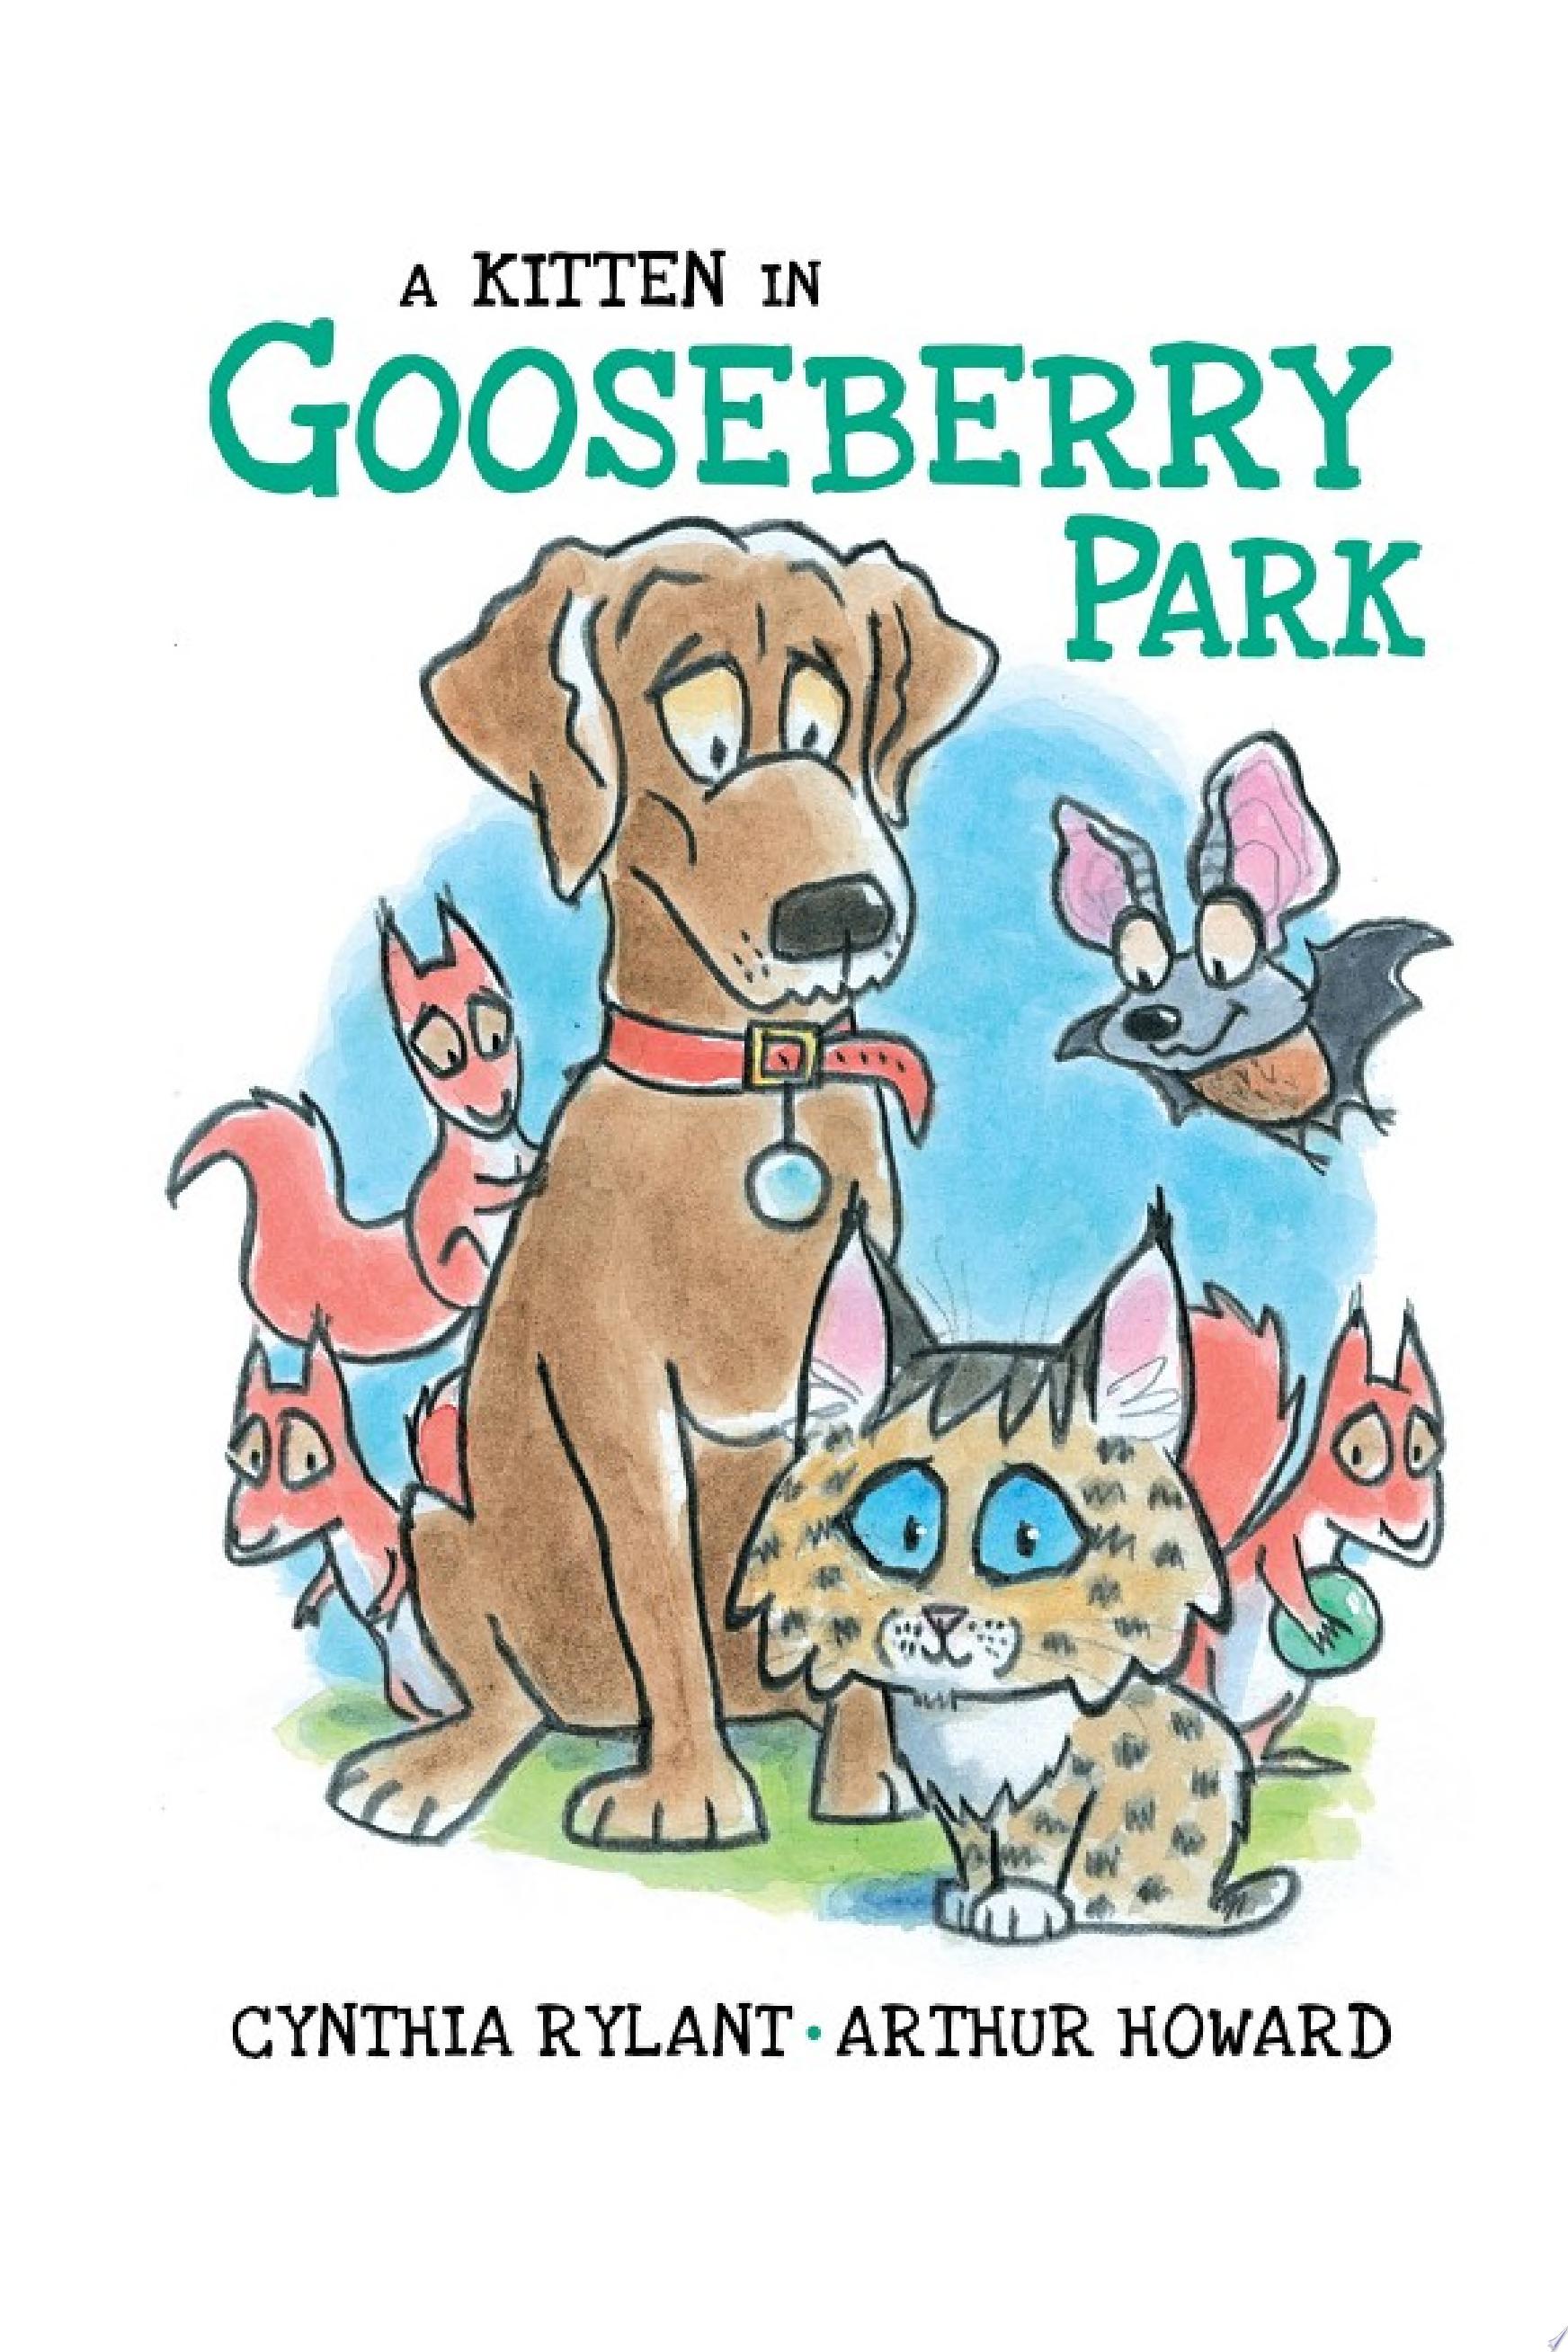 Image for "A Kitten in Gooseberry Park"